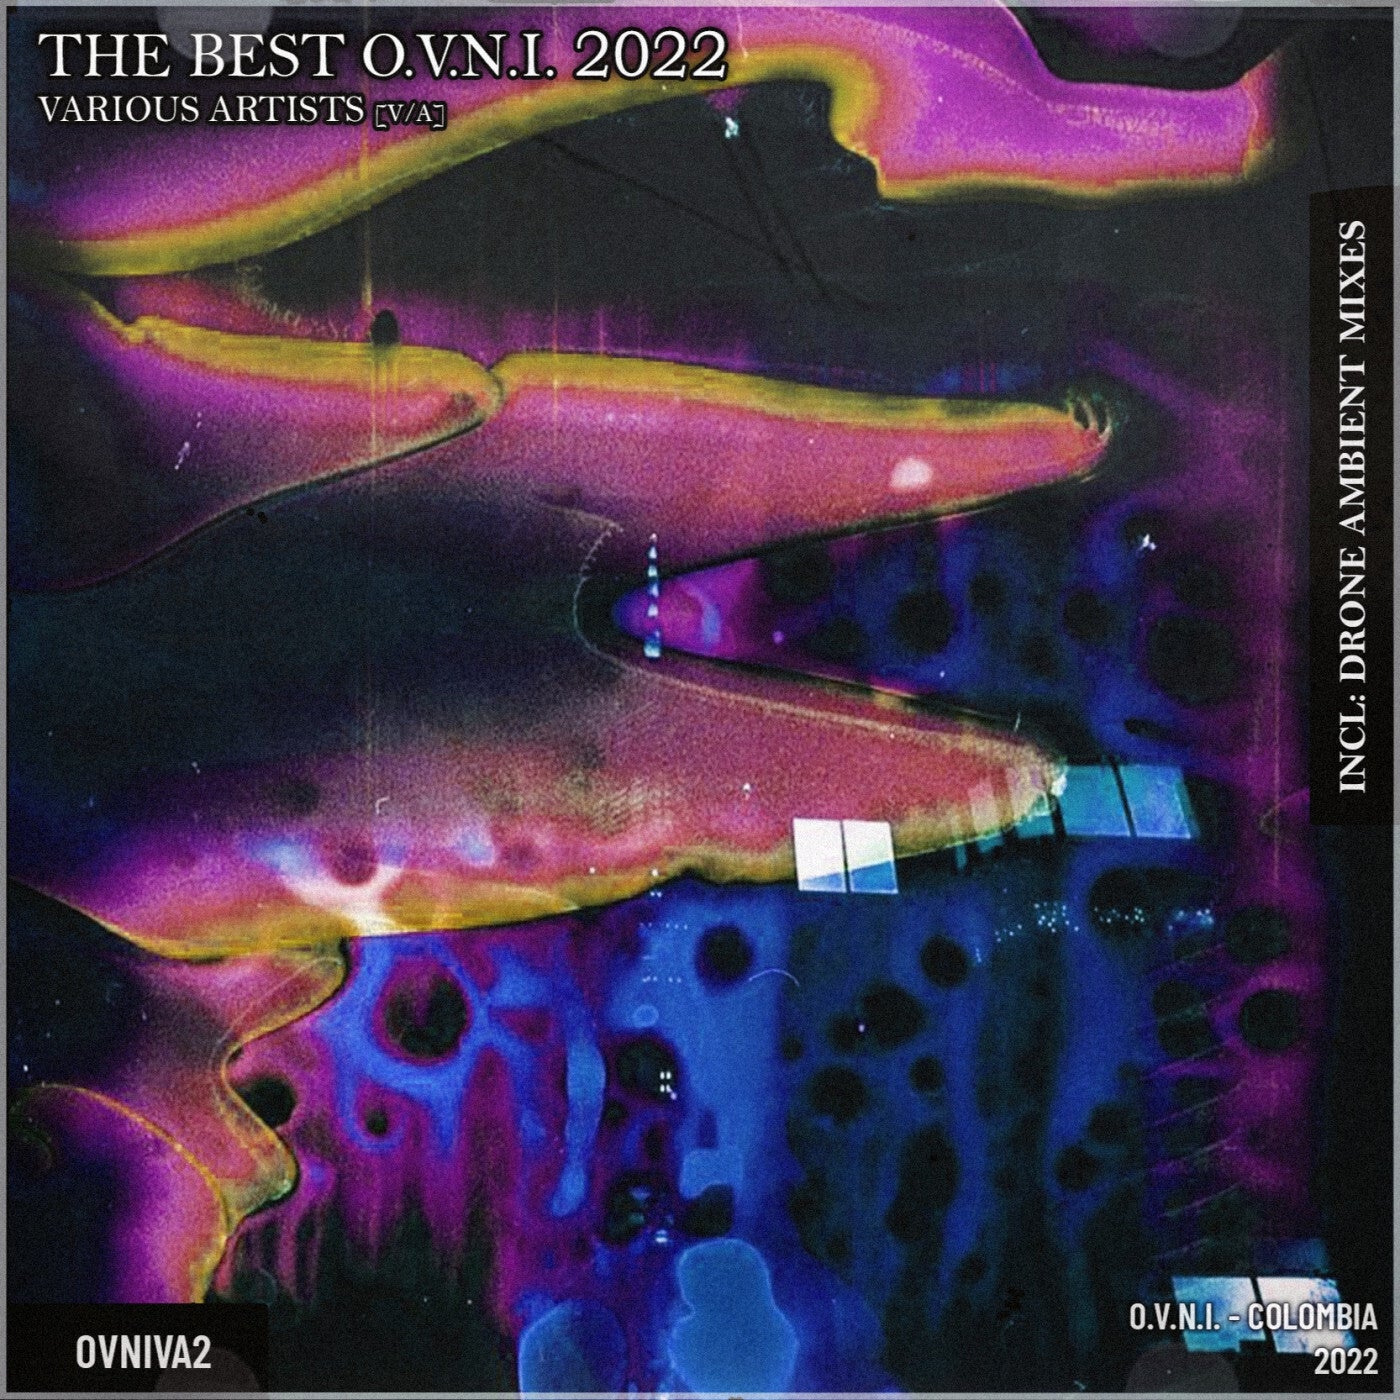 The Best O.V.N.I. 2022